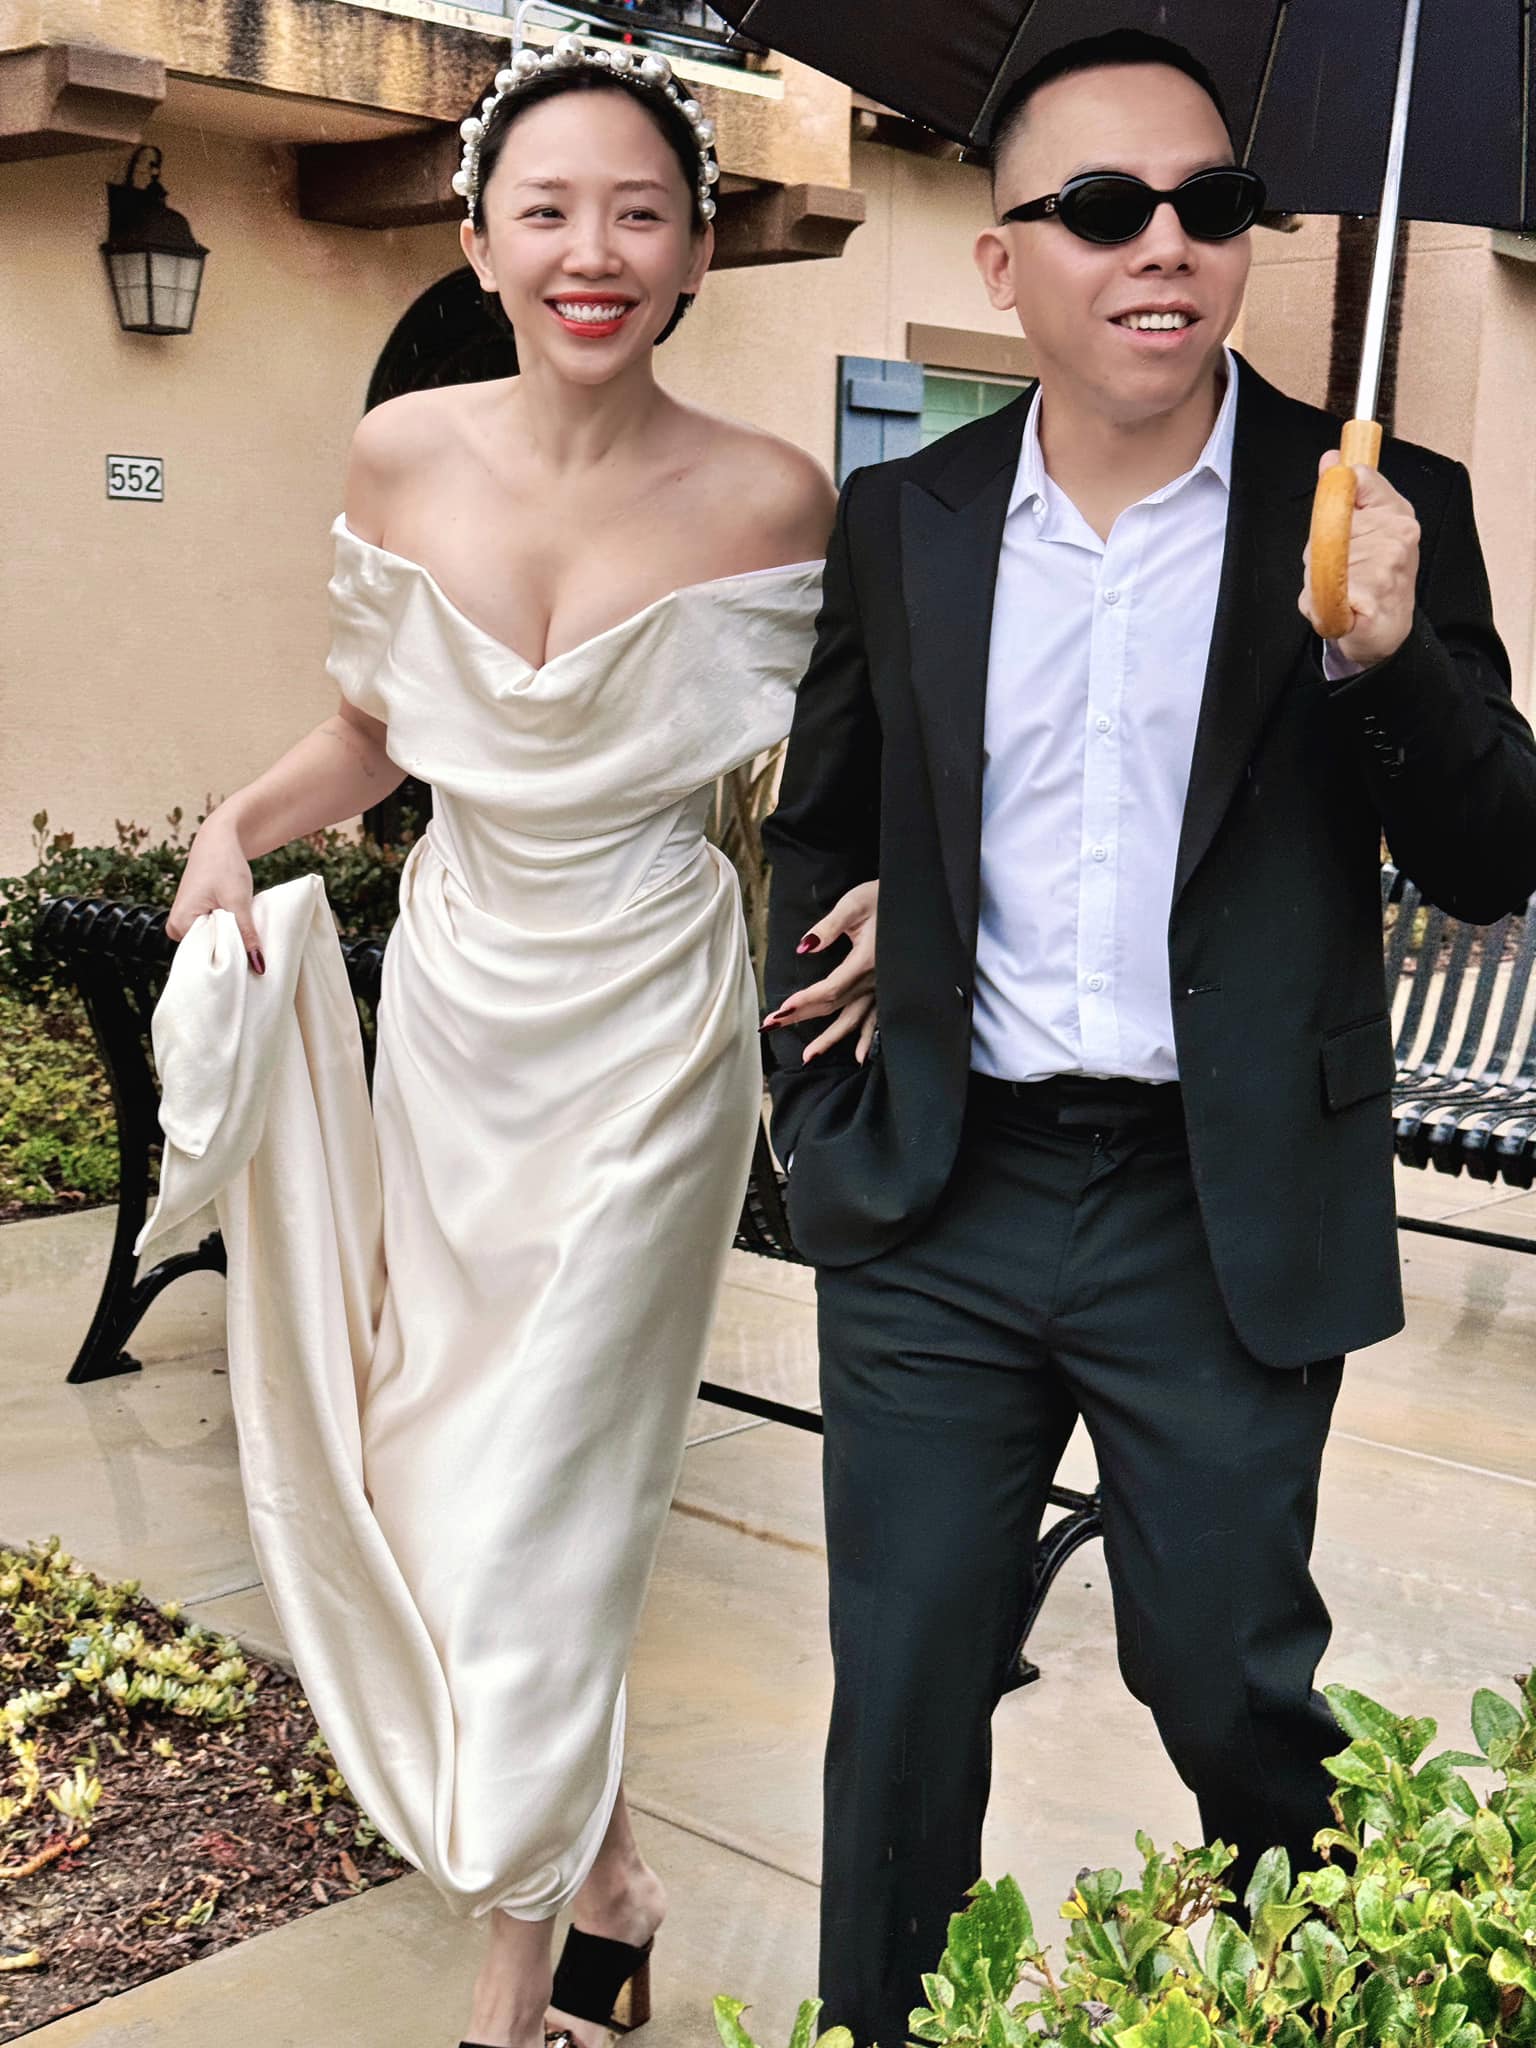 Hé lộ bức ảnh duy nhất trong lễ ăn hỏi riêng tư cặp đôi Vbiz tại Hà Nội, nhan sắc cô dâu gây chú ý- Ảnh 4.